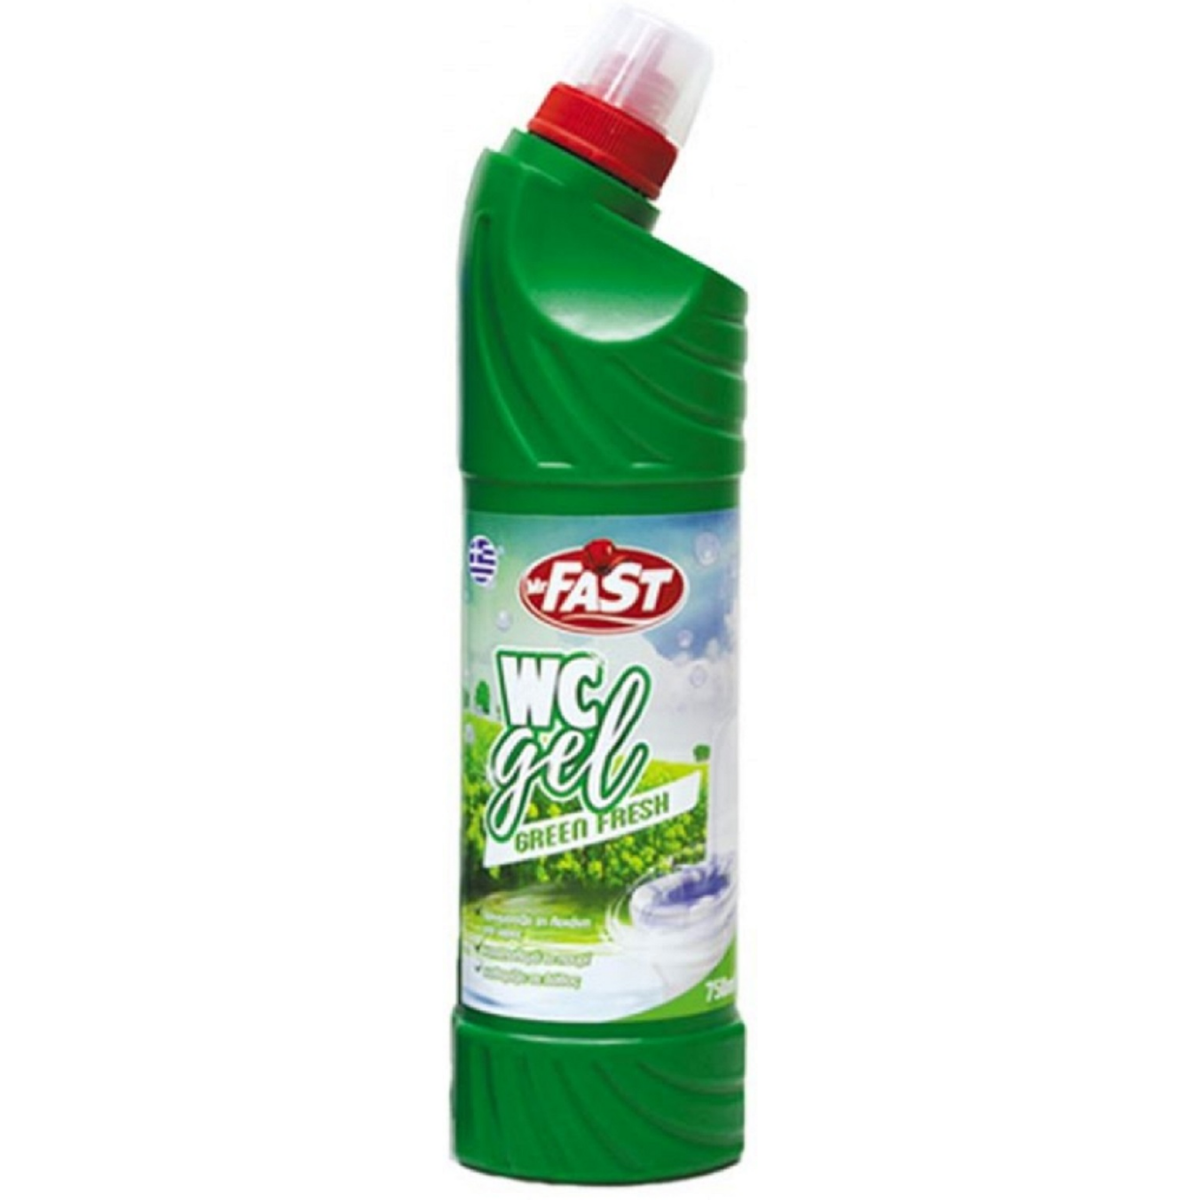 Mr Fast Wc Gel Green Fresh 750ml.